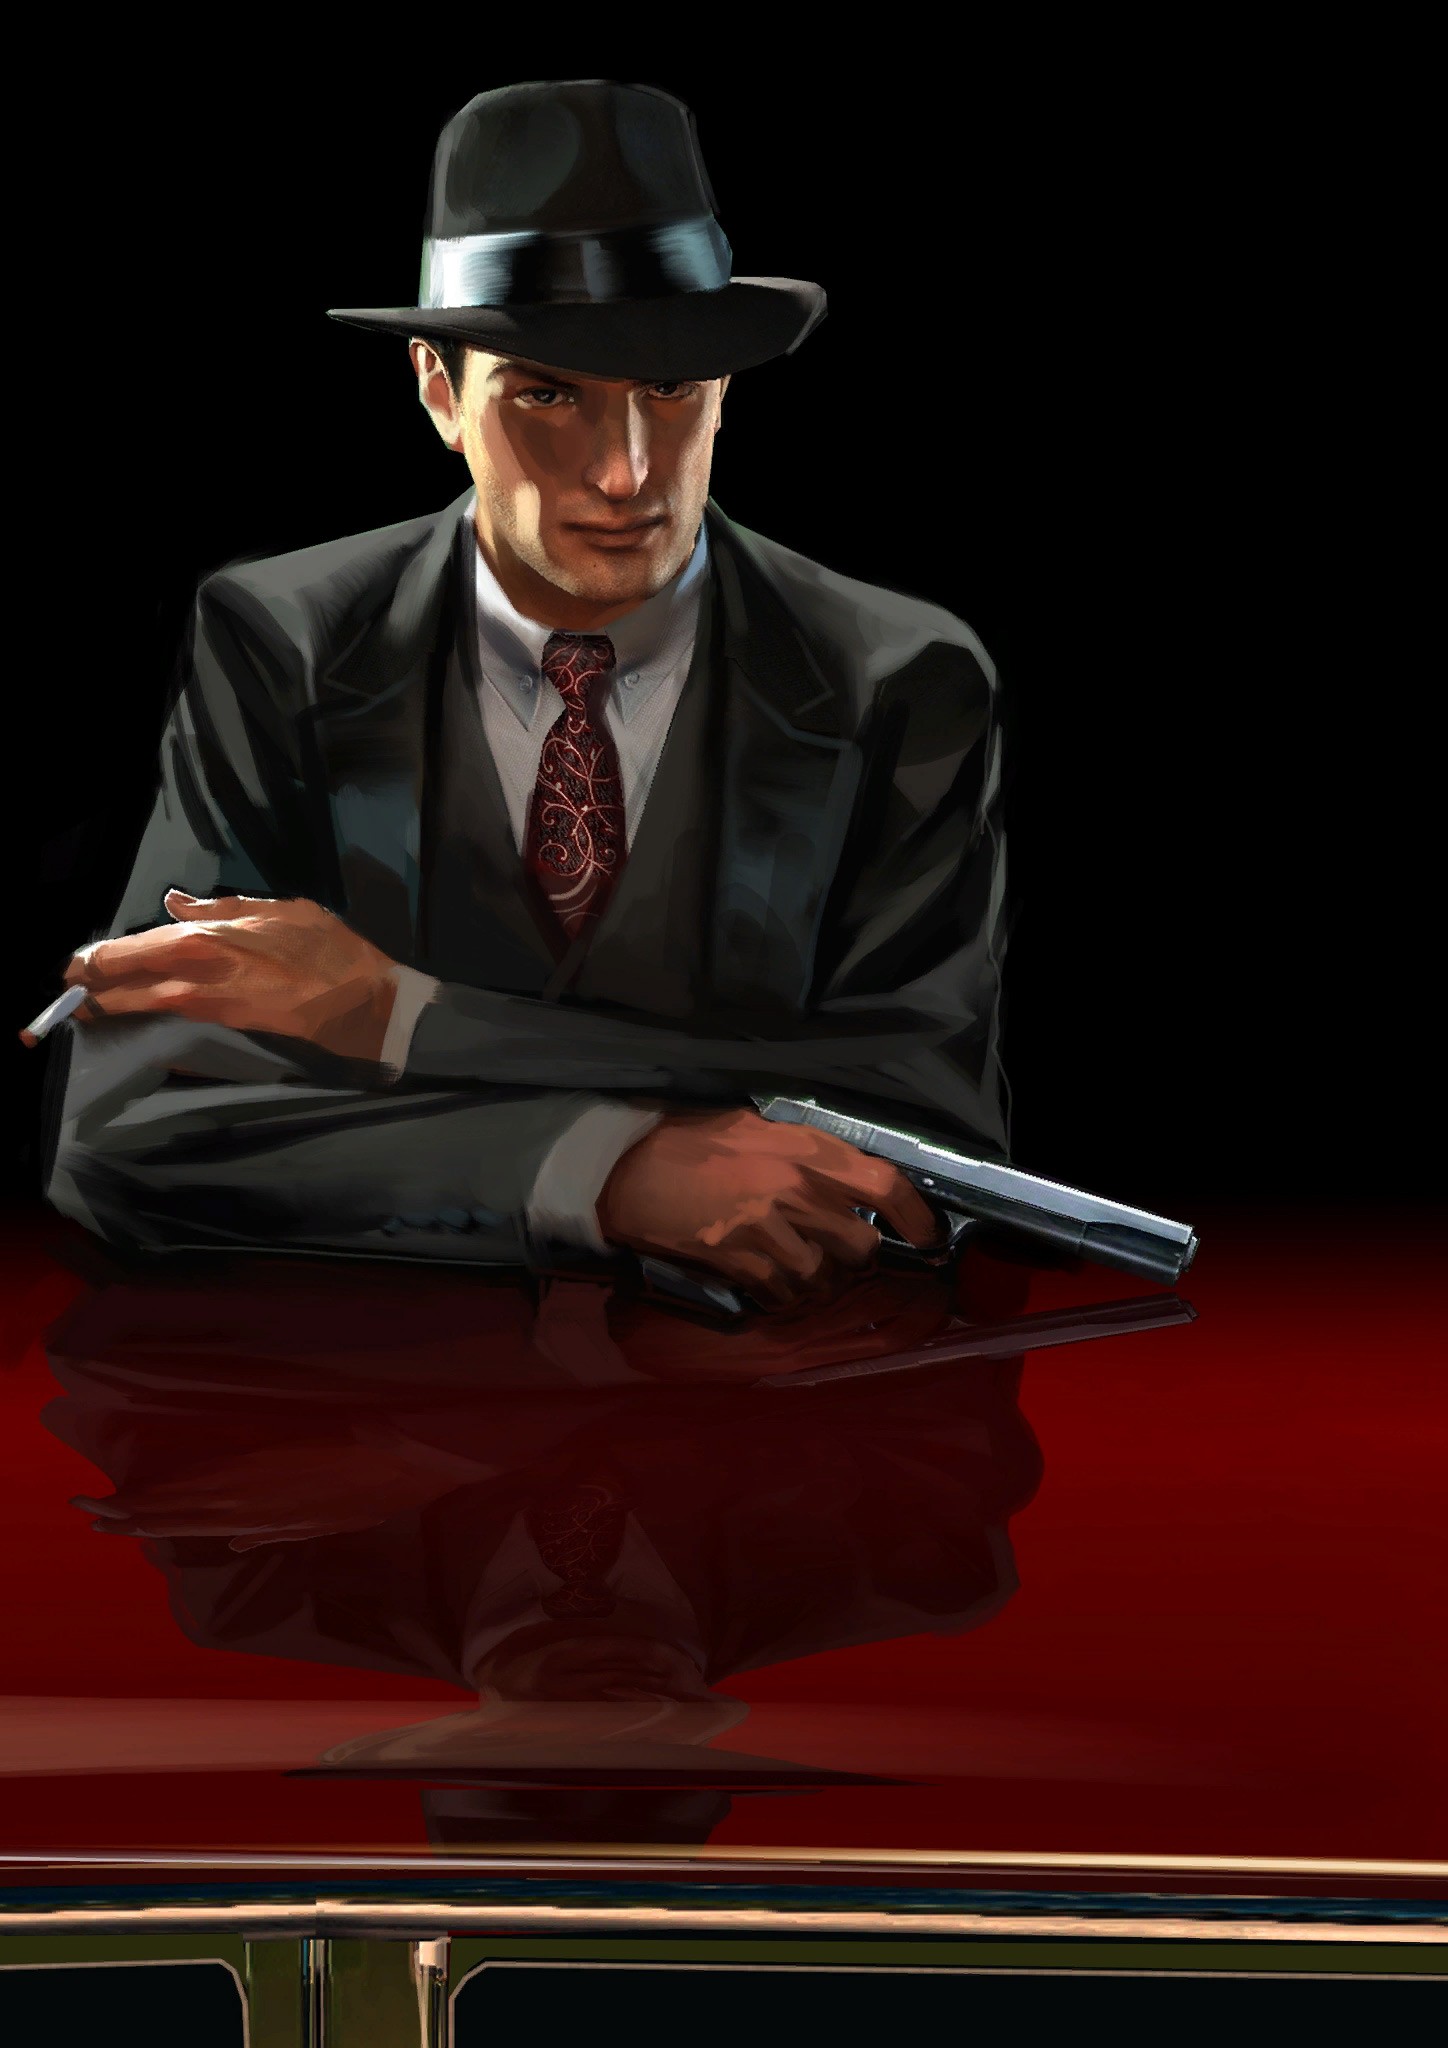 General 1448x2048 Mafia II Mafia video games PC gaming gun hat men suits tie video game art gangster crime